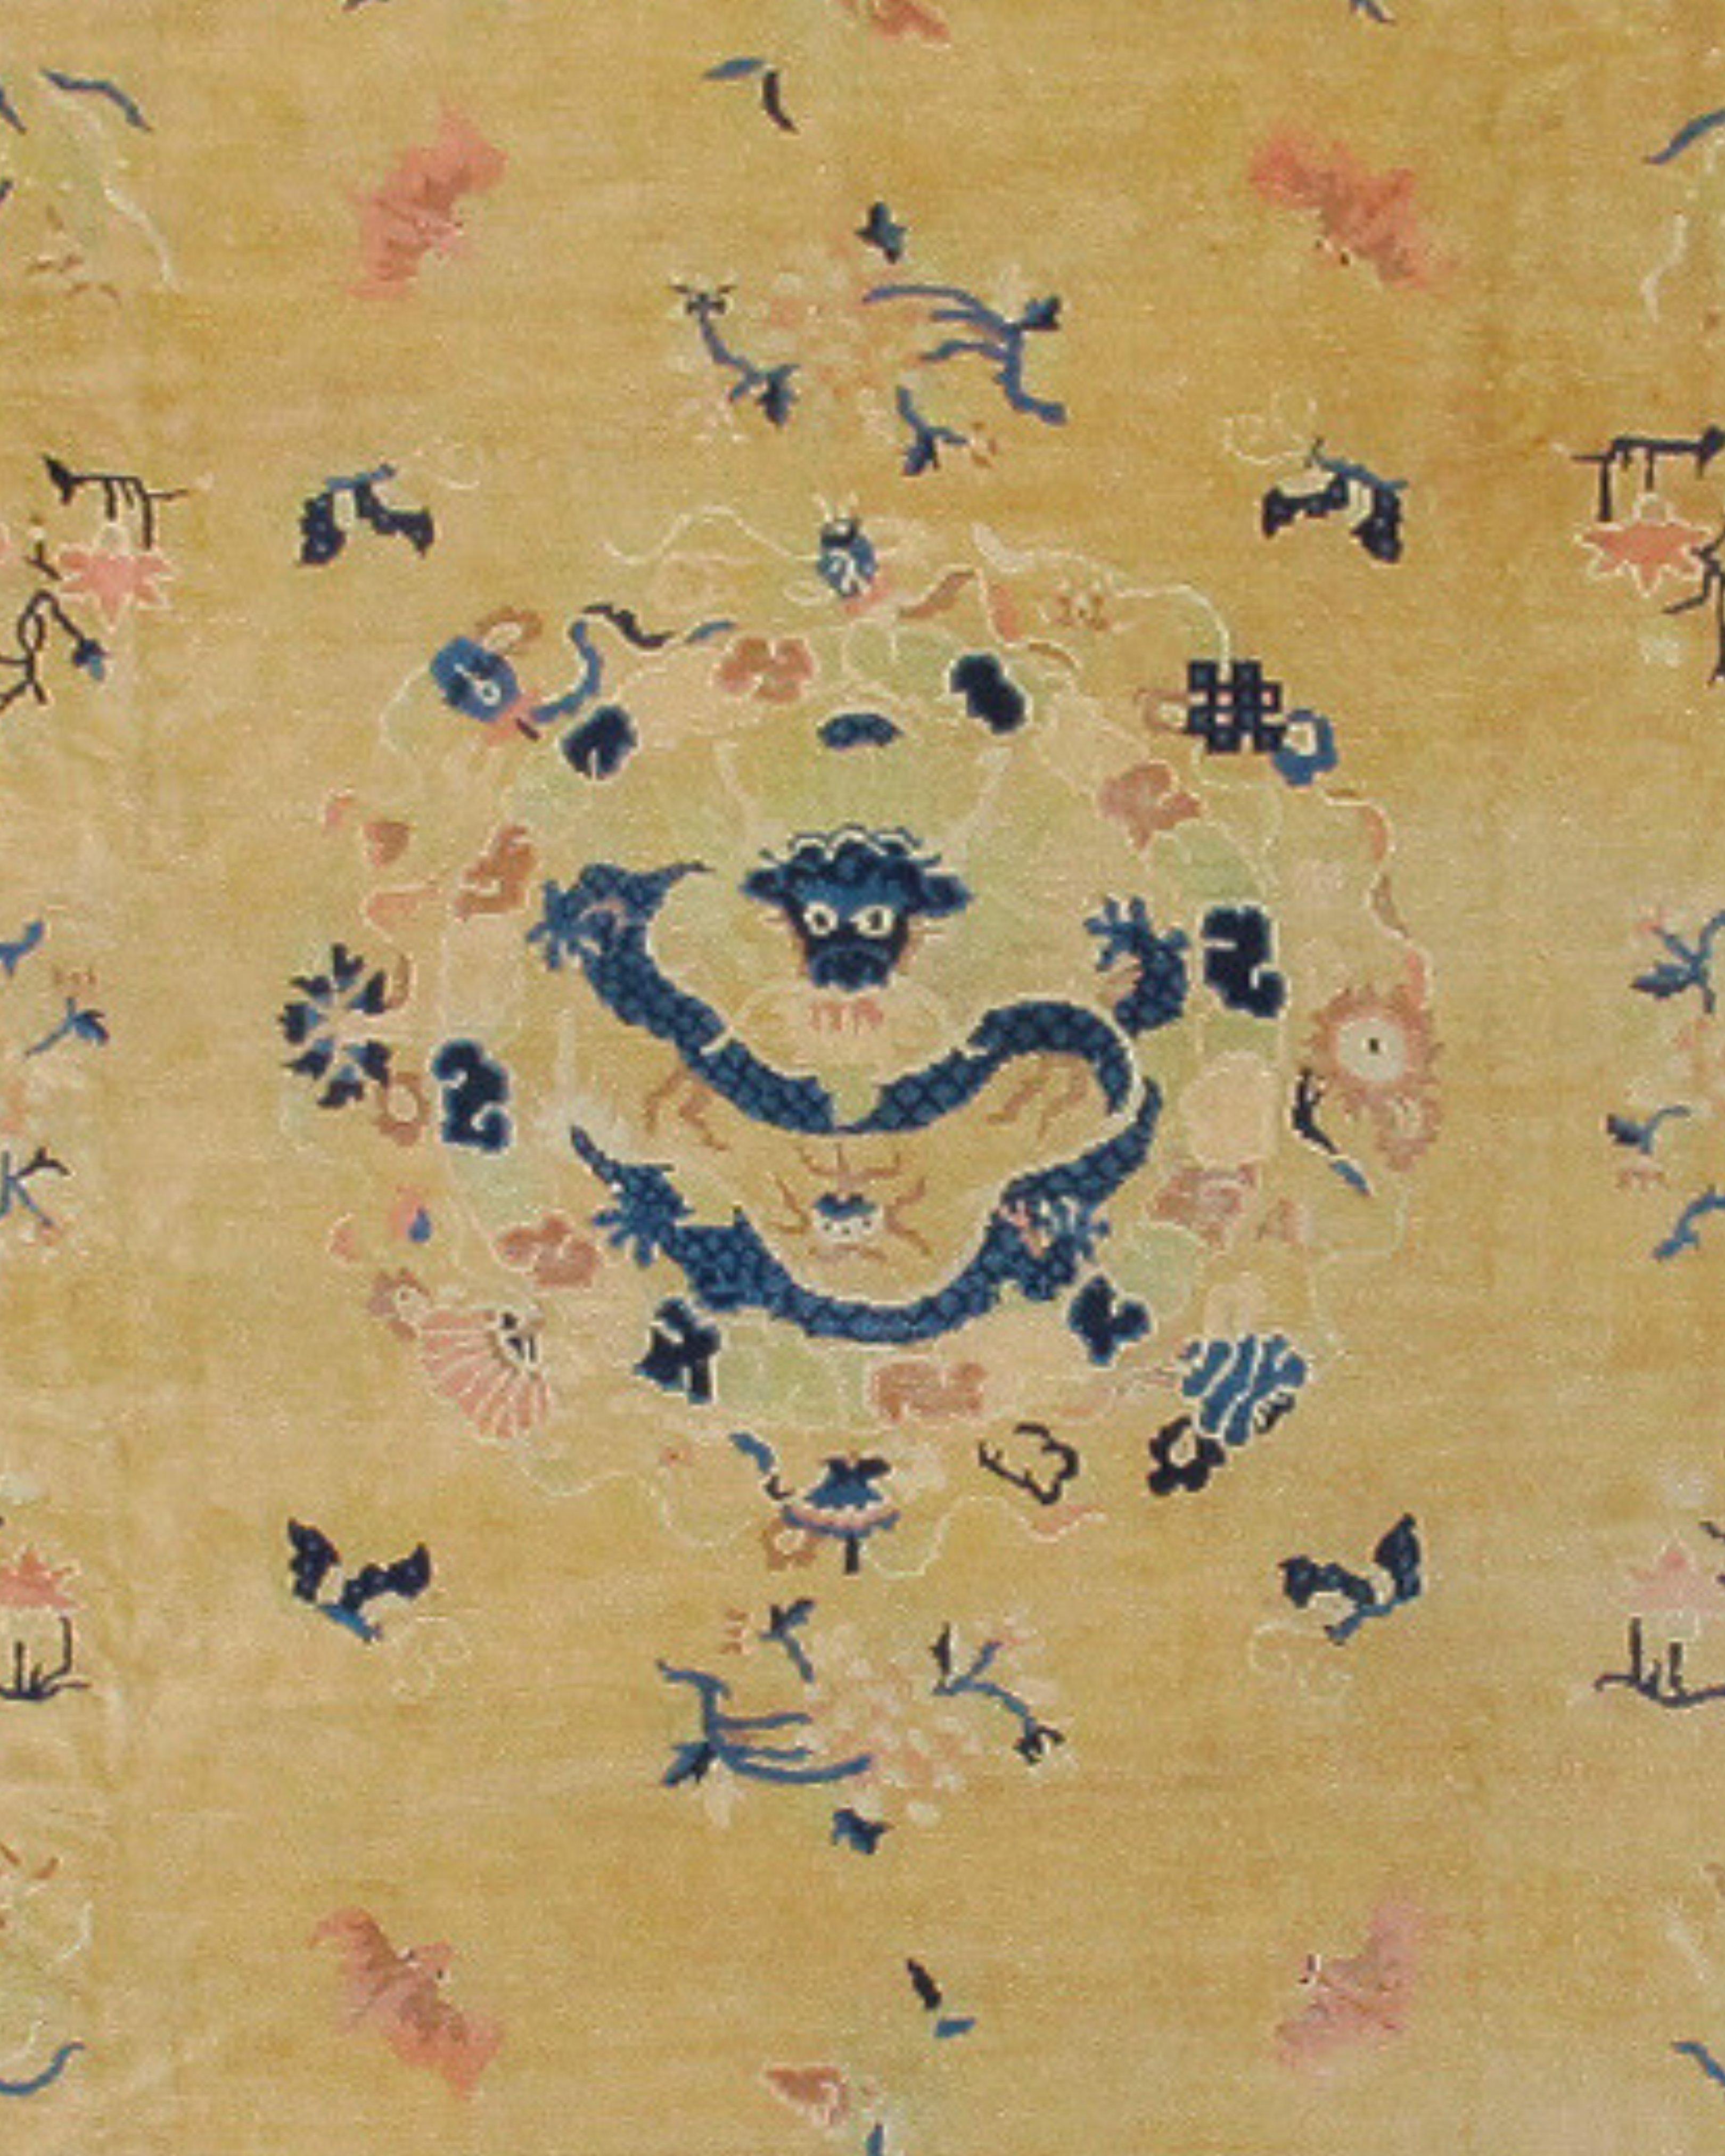 Ancien tapis chinois de Pékin, C.I.C. 1920

Informations supplémentaires :
Dimensions : 9'0